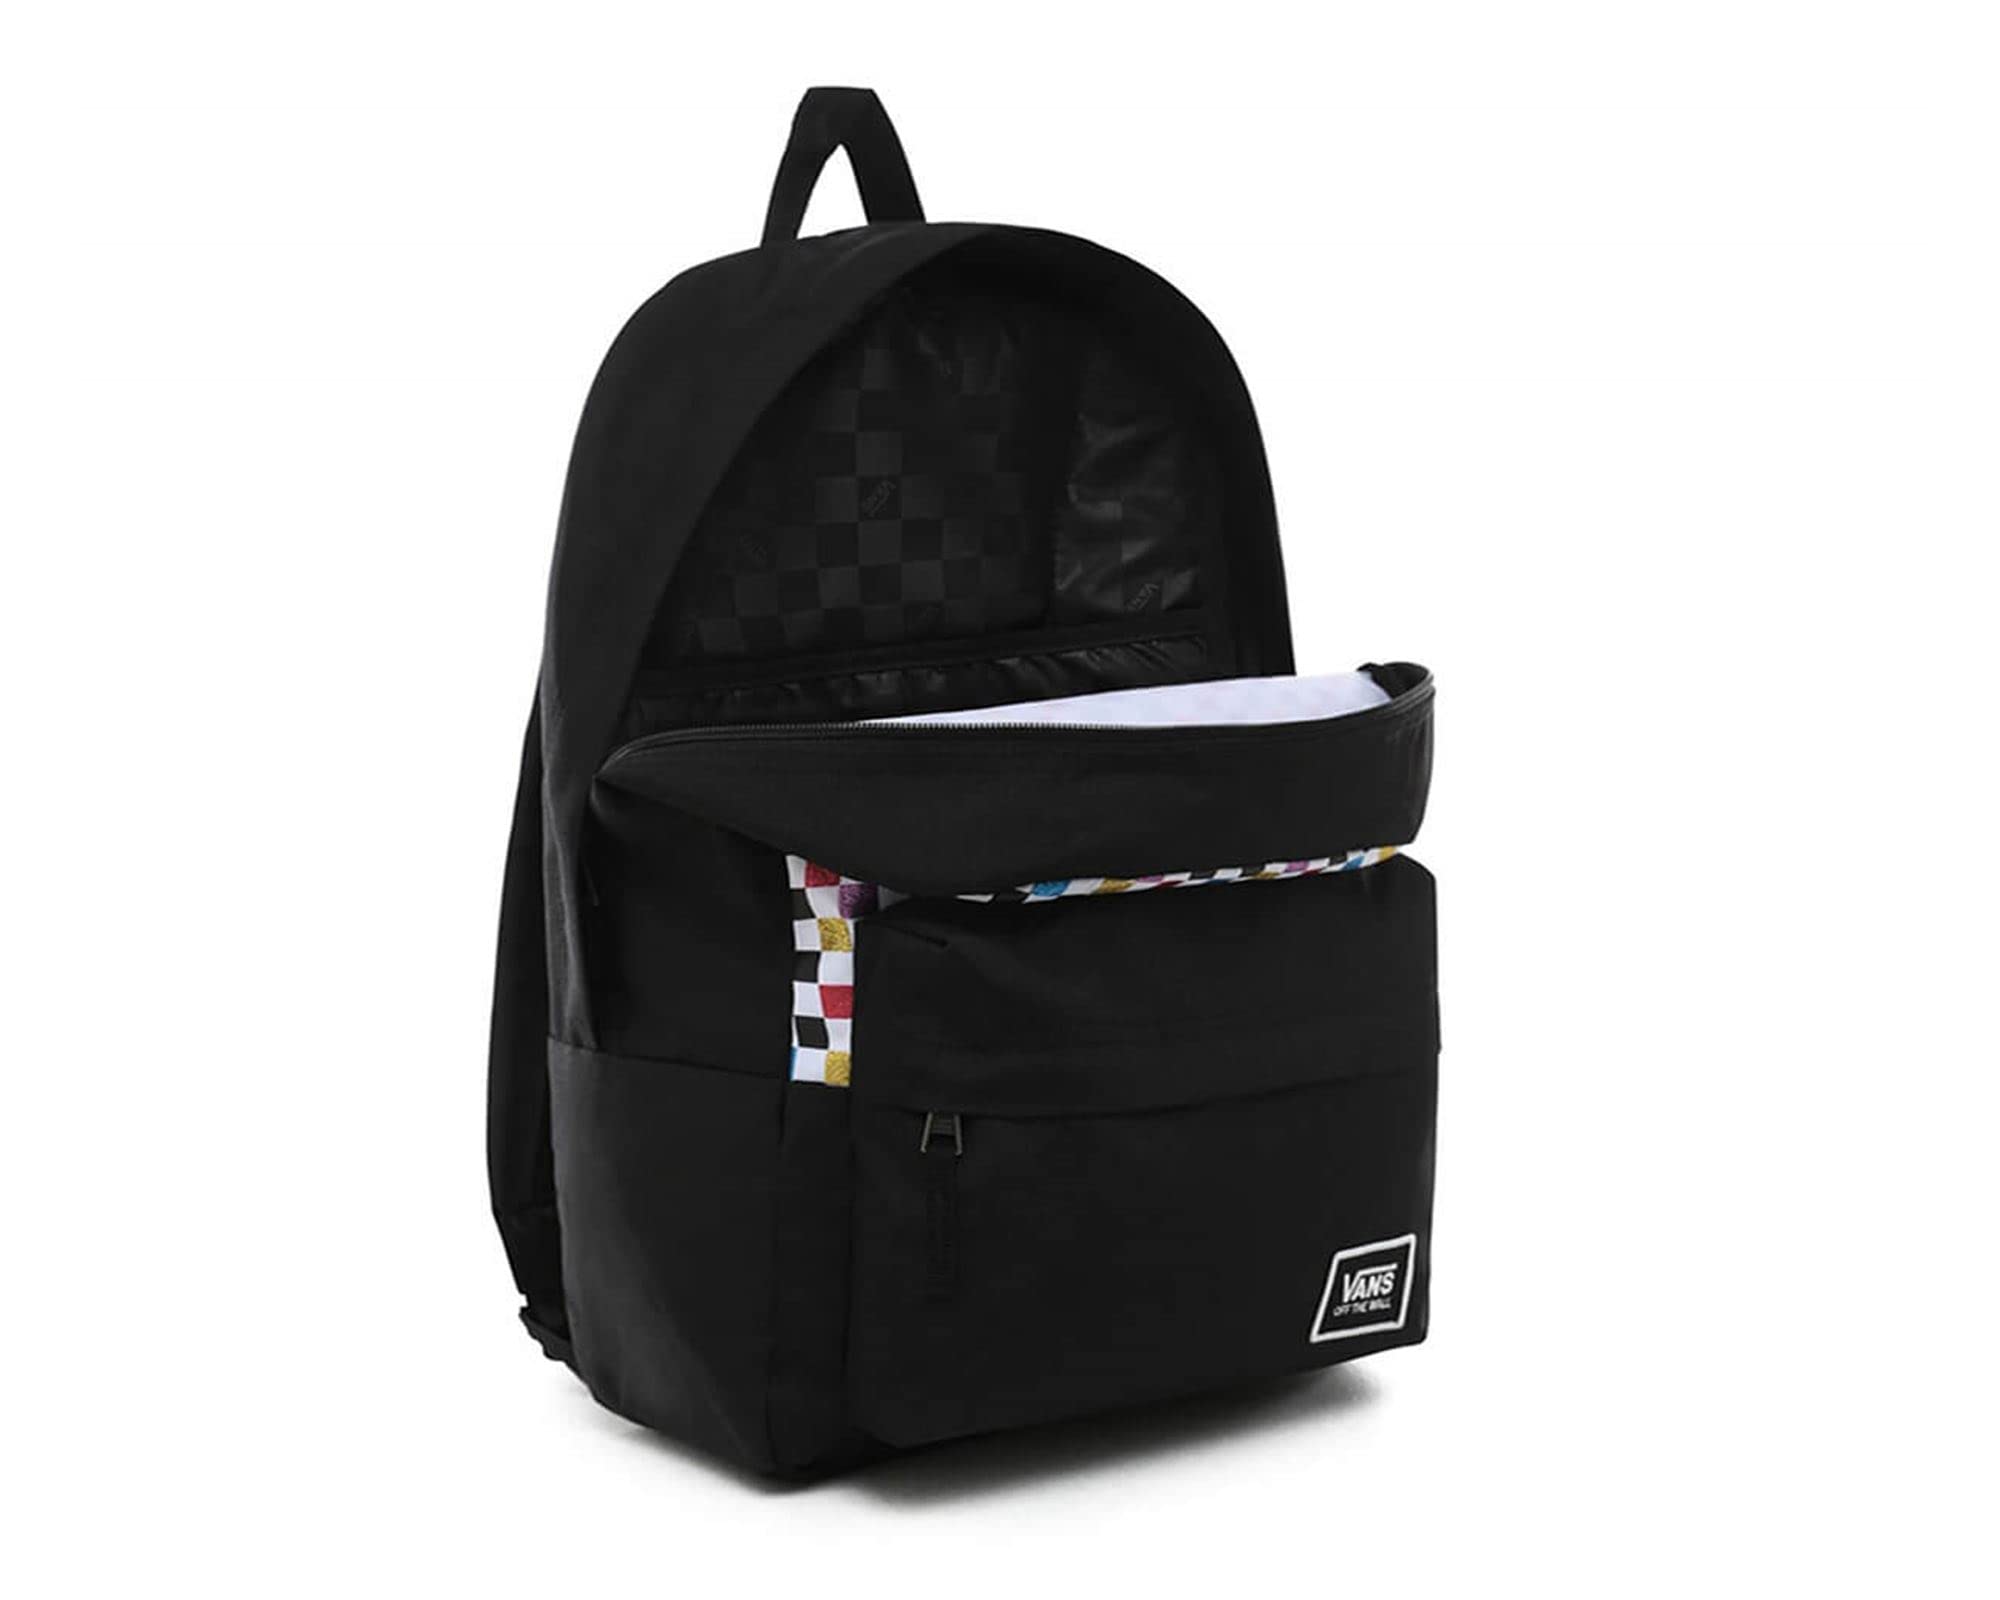 Vans Backpack, Black, One Size